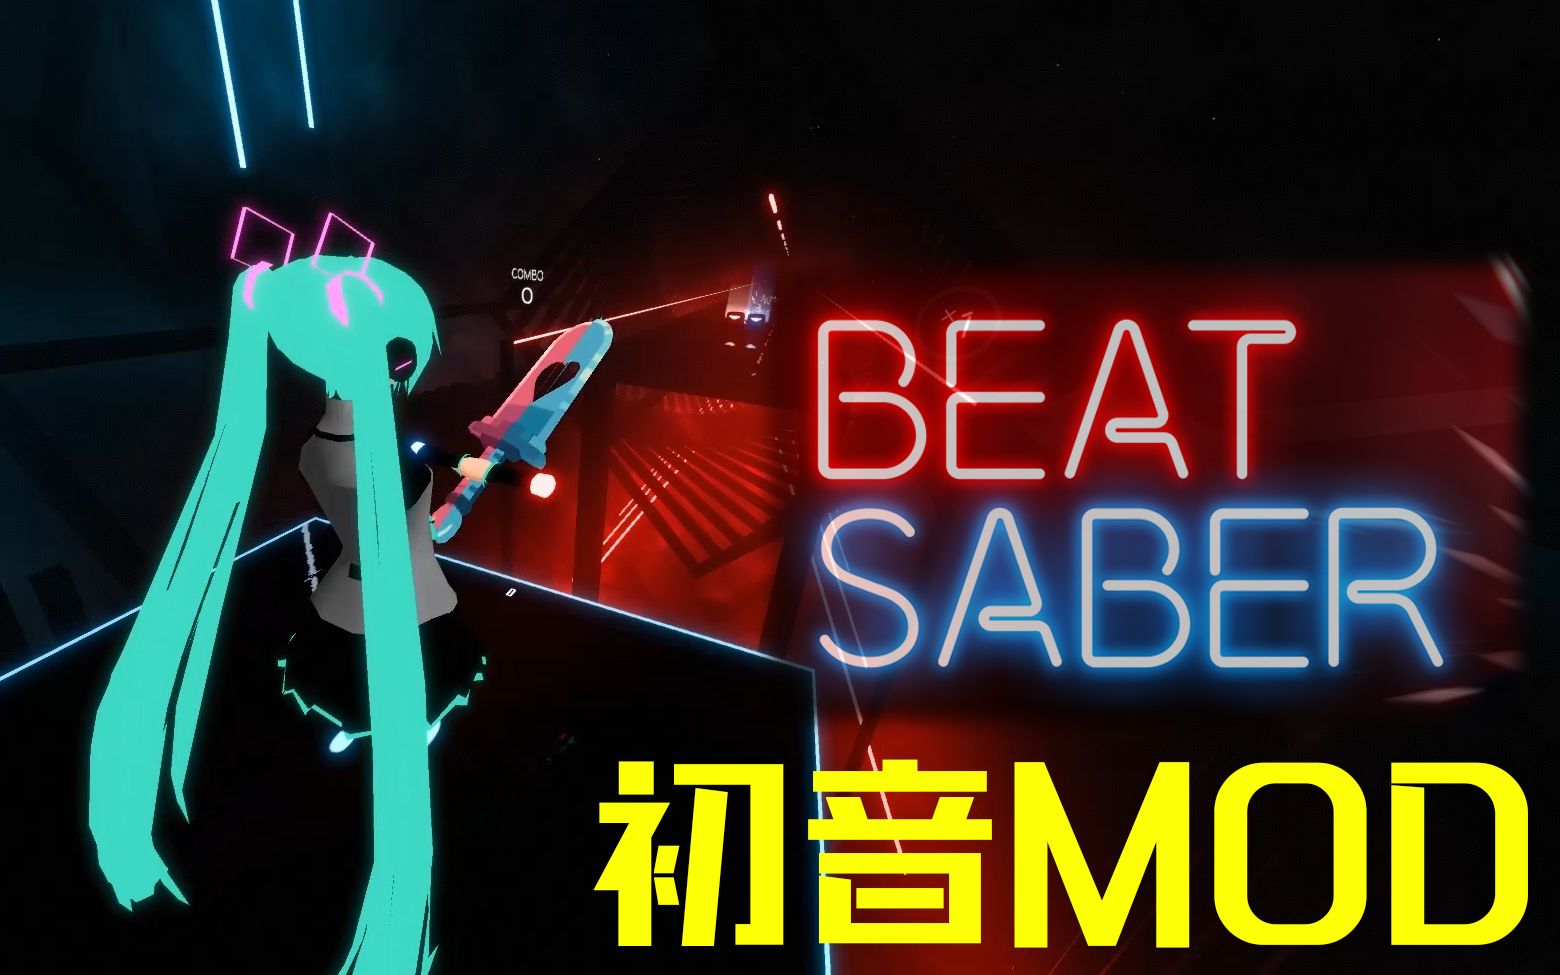 beat saber mod installer wont install